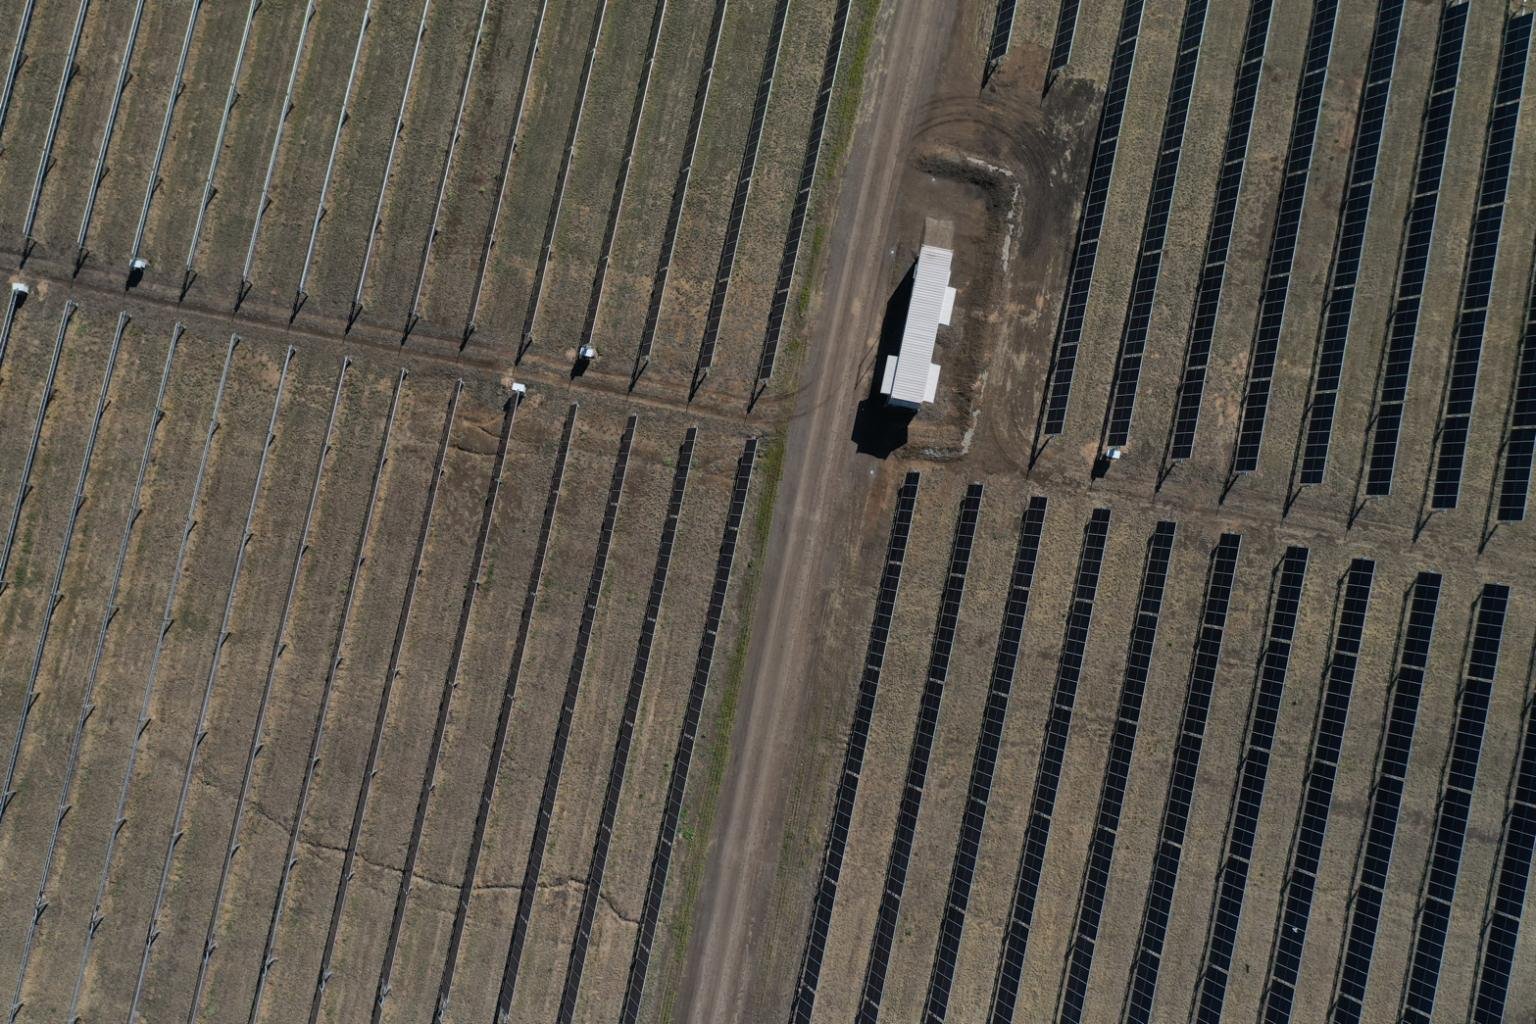 Warwick SF Aerial View.jpg